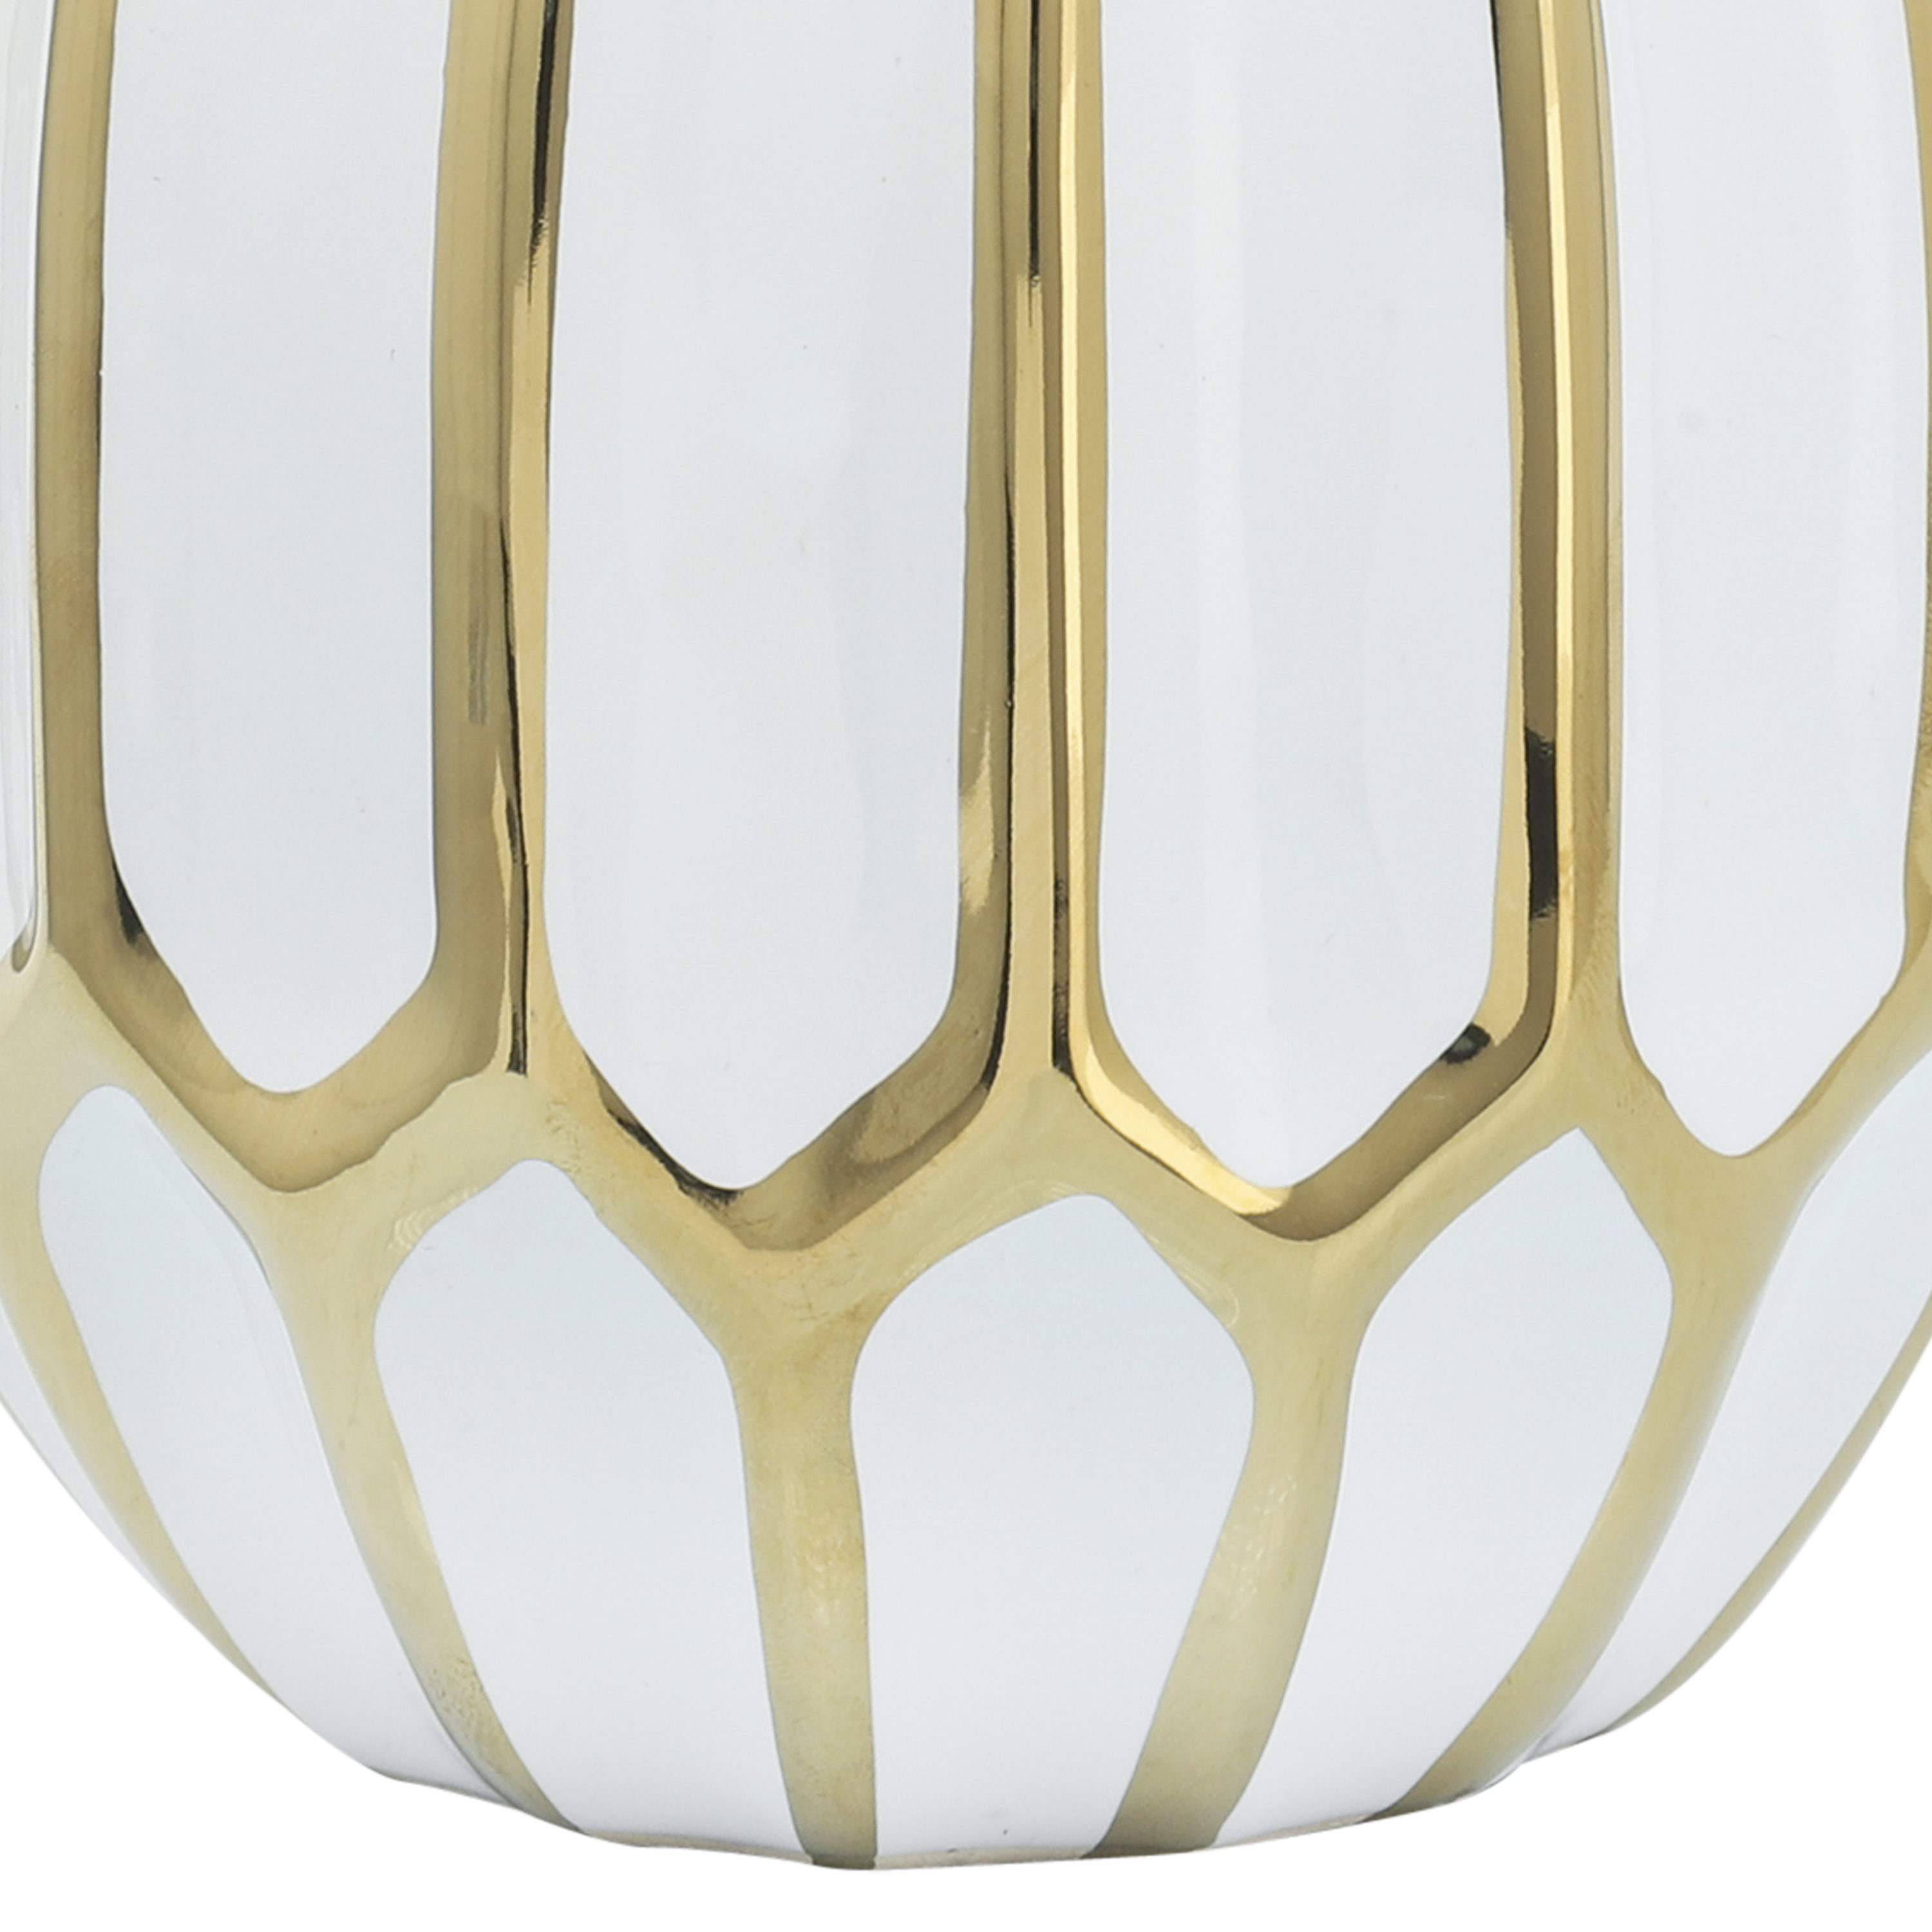 7 x 7 x 12 Inches Sagebrook Home 12056-06 Decorative Ceramic Covered Jar White/Gold Ceramic